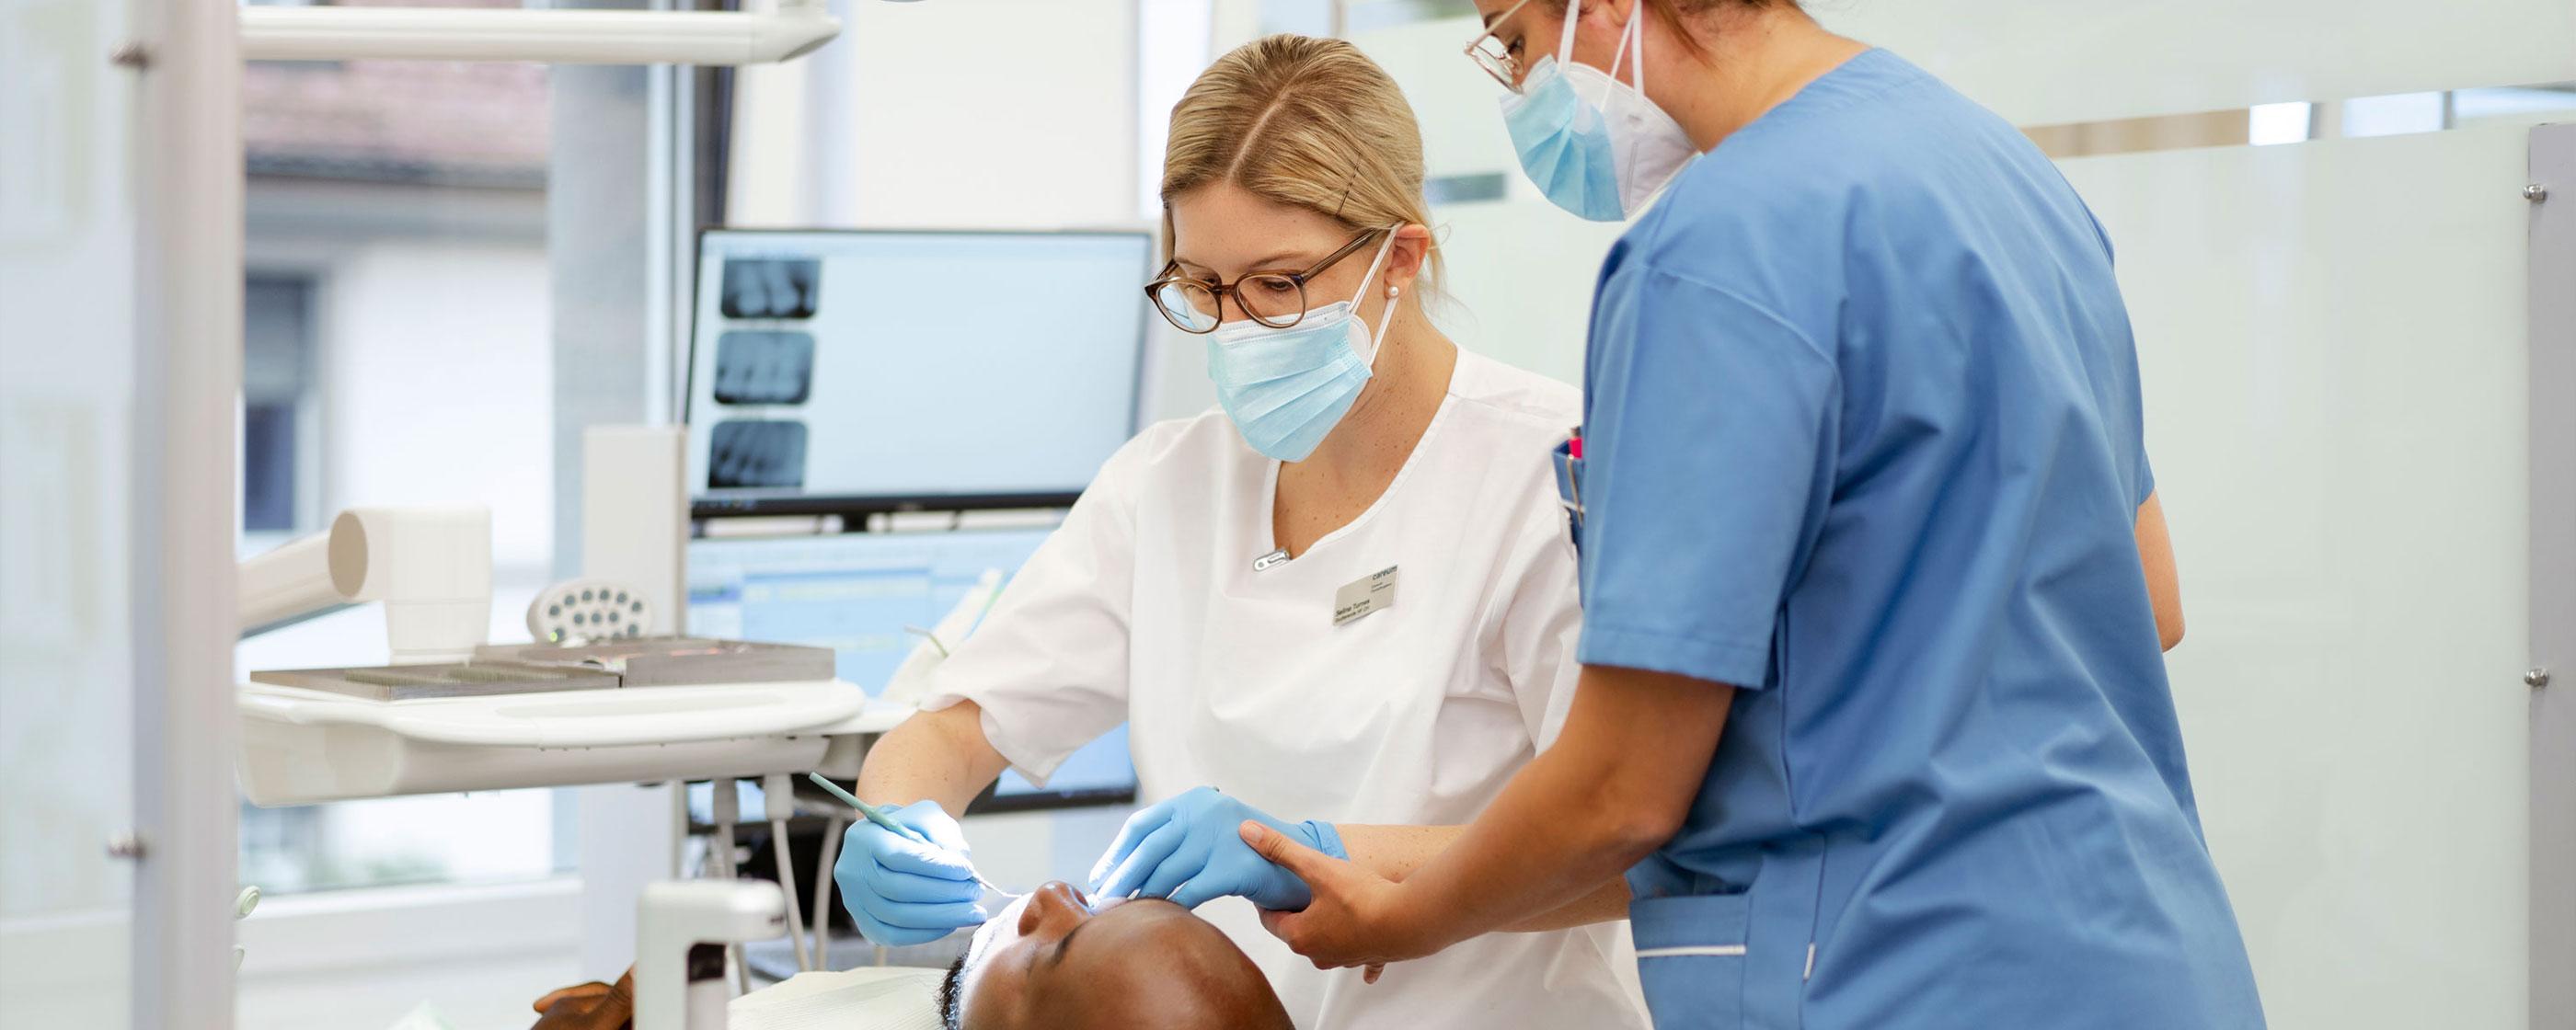 Höhere Fachschule Dentalhygiene, Weiterbildung Terminalanästhesie